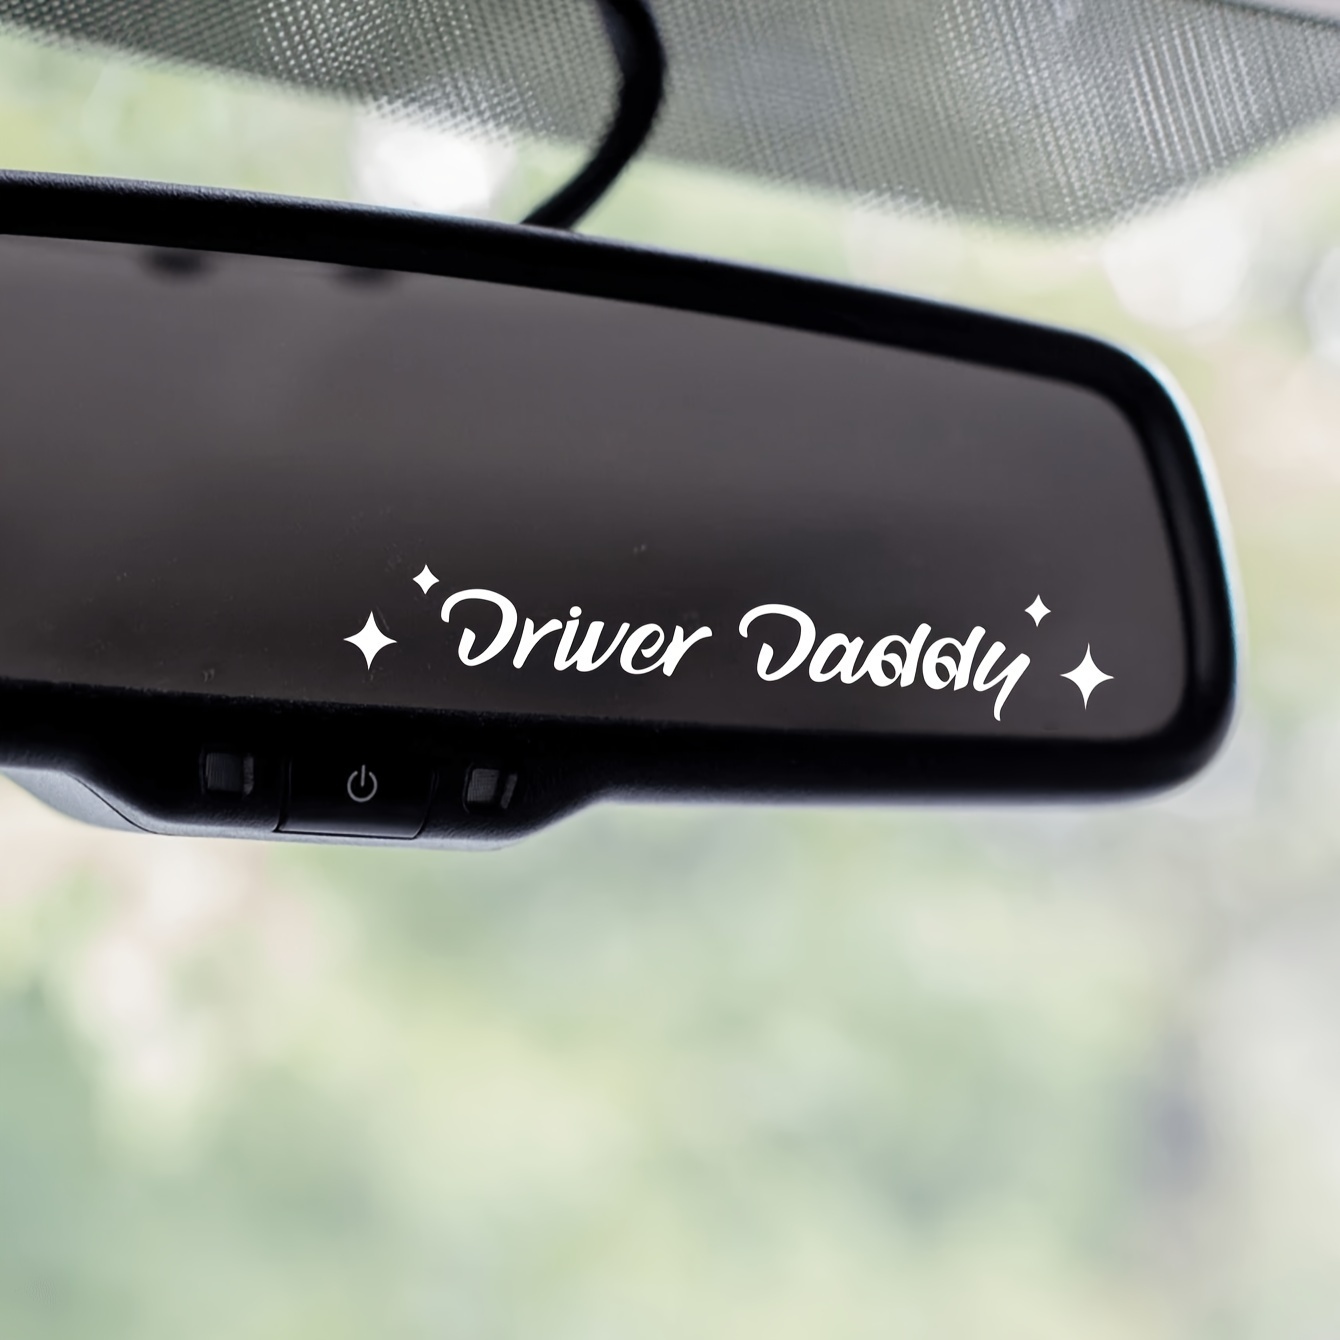  Colgante de foto personalizada accesorios de coche regalo  pareja imagen personalizada espejo coche interior colgante decoración :  Automotriz